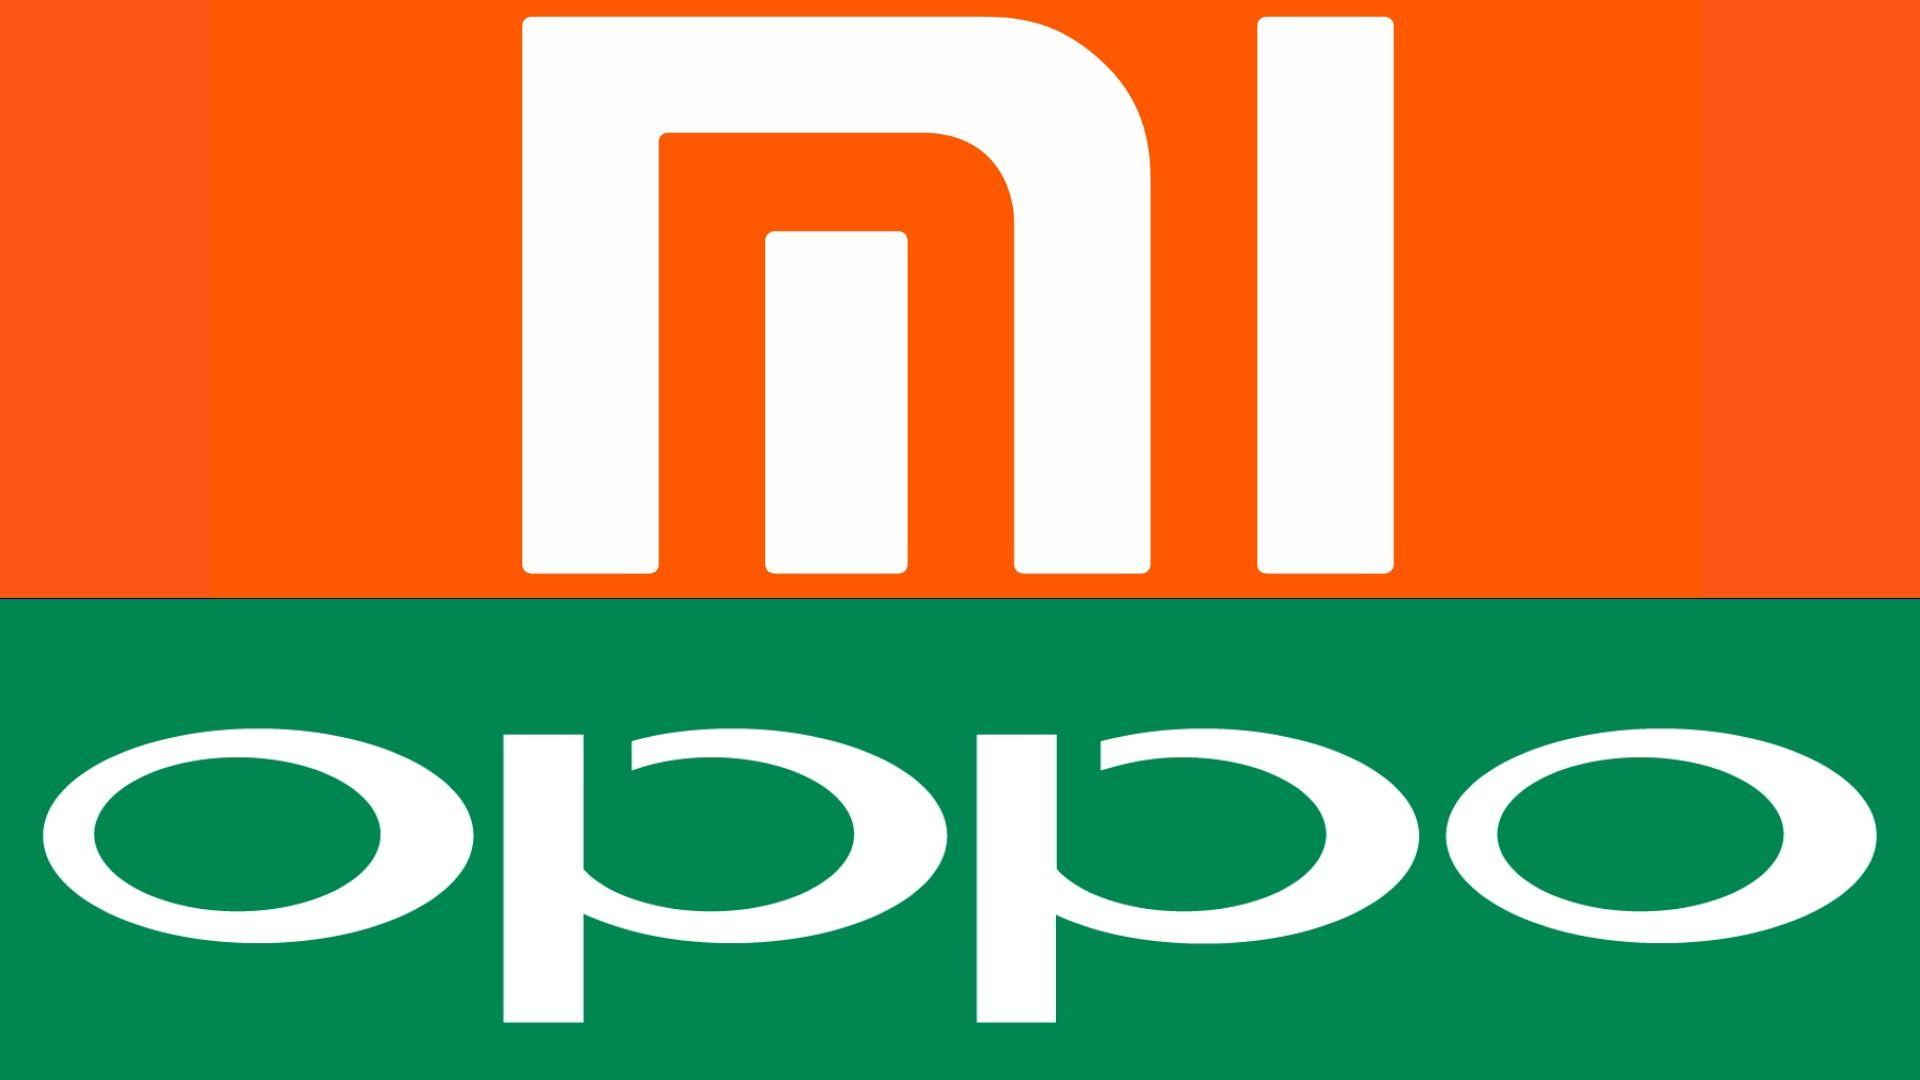 Oppo Logo - xiaomi oppo logo EDITED IMAGES. 1 • TechnoNow